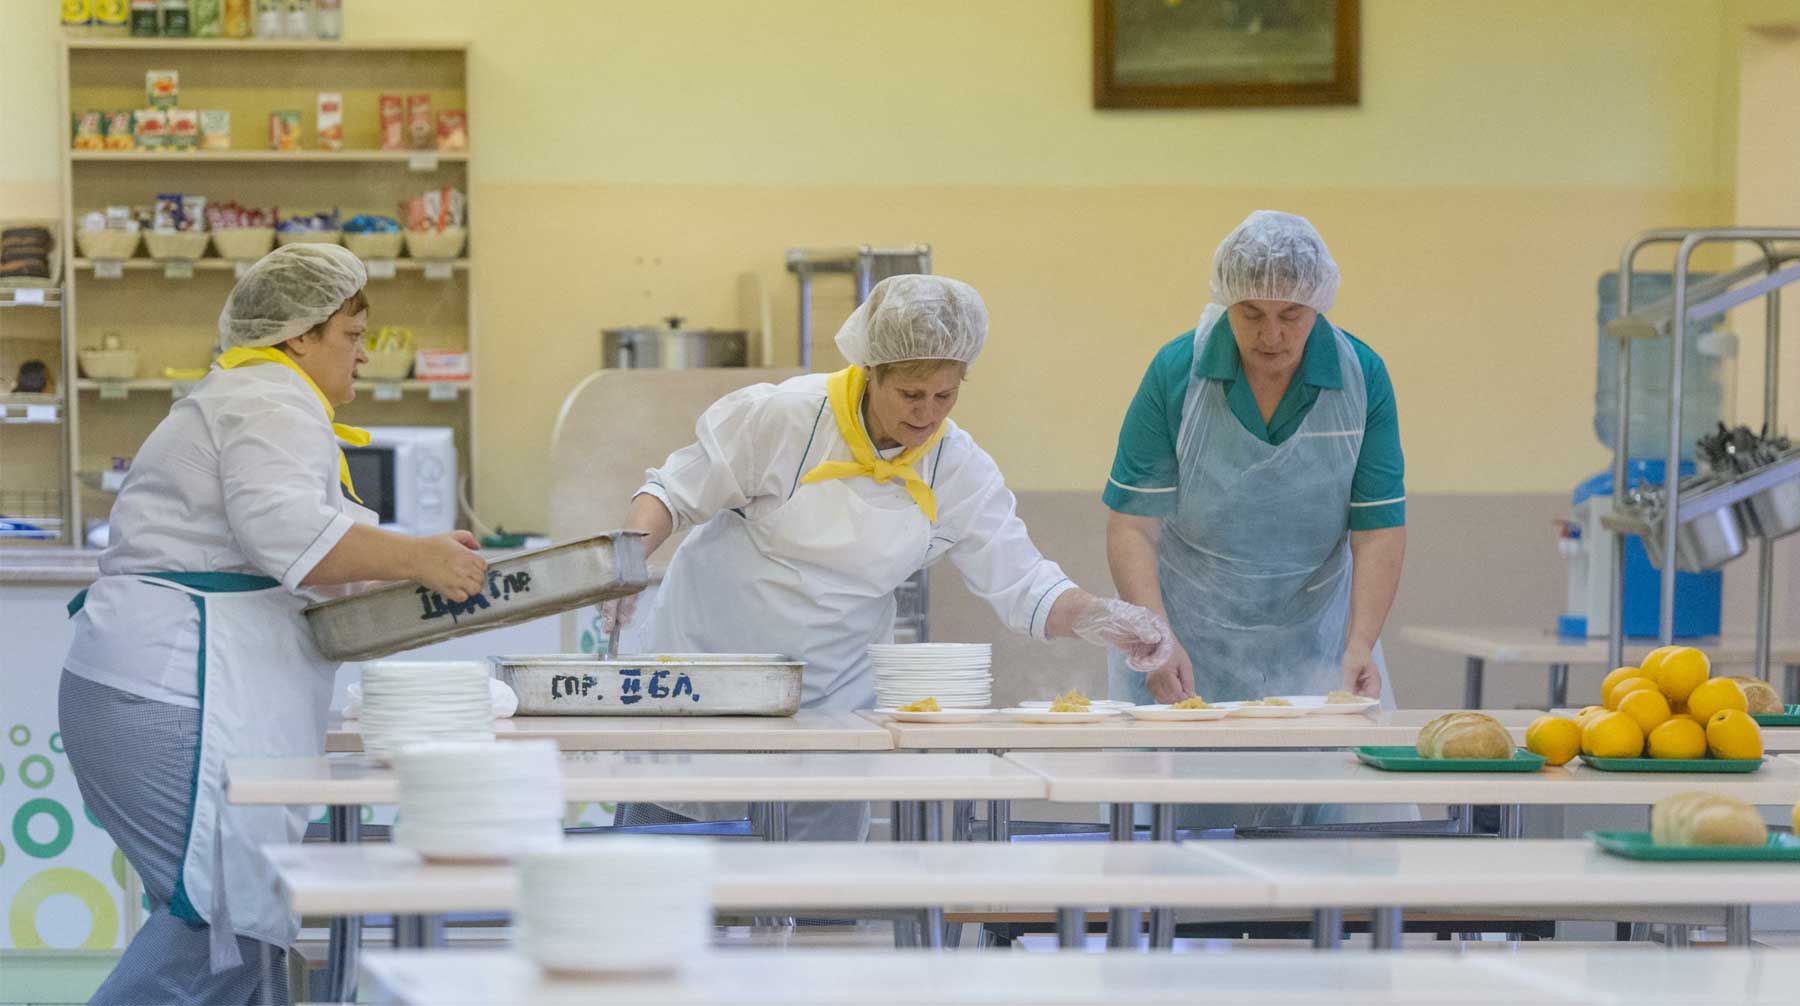 Минпросвещения объявило конкурс на создание единой модели школьного питания стоимостью в семь миллионов рублей Фото: © GLOBAL LOOK press / Anton Belitsky